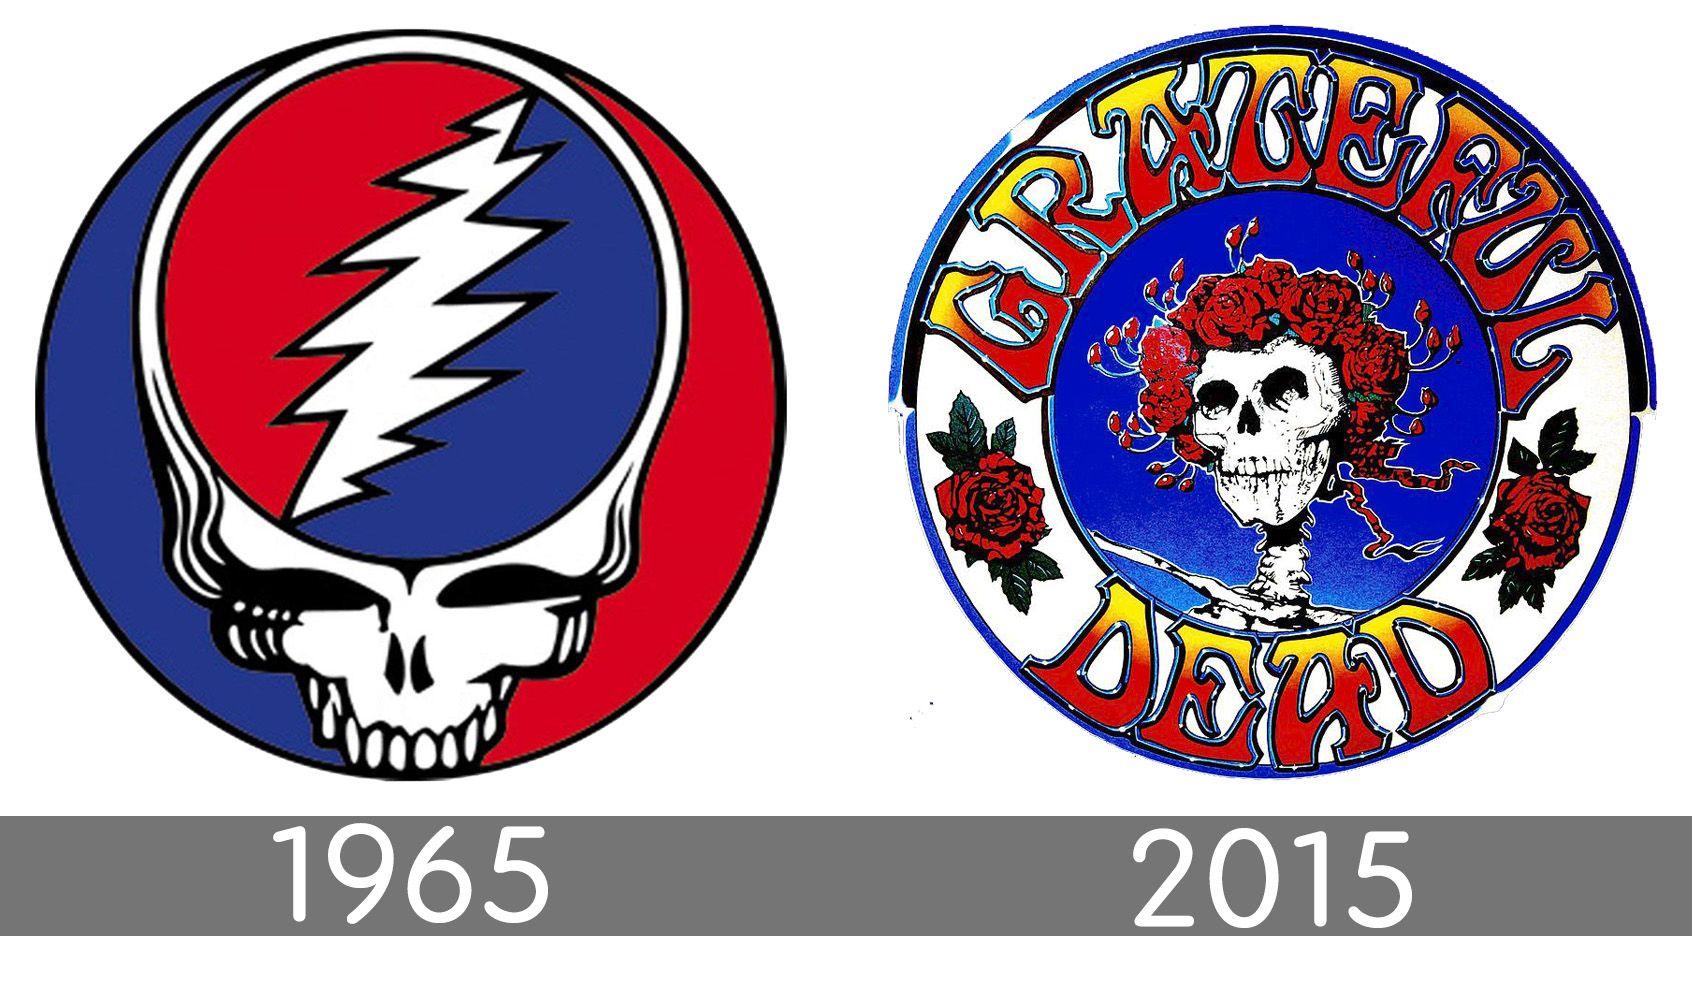 Grateful Dead Logo - Grateful Dead logo, symbol, meaning, History and Evolution